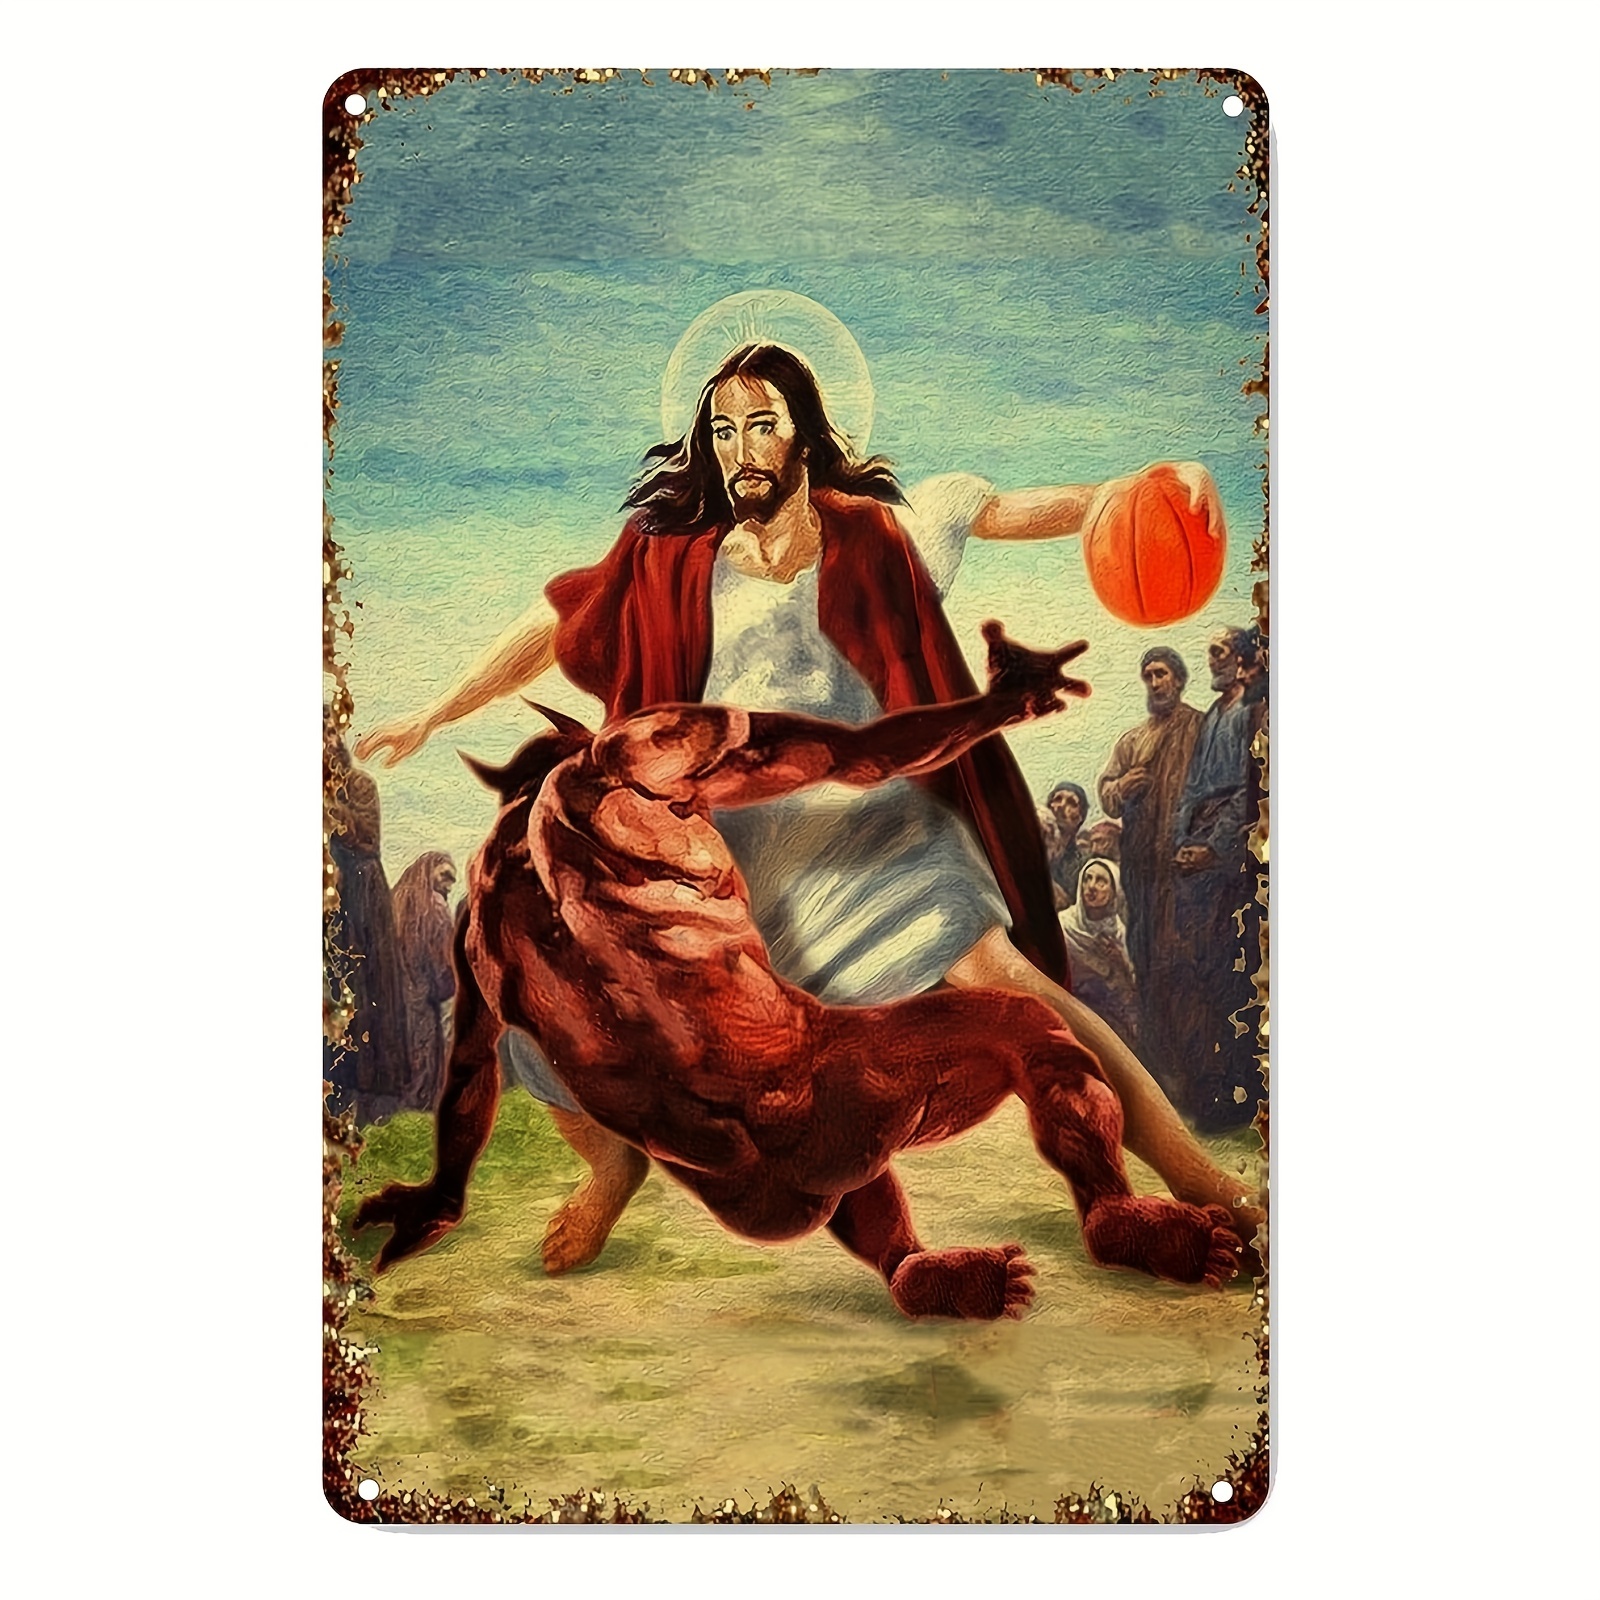 1 Pièce, Panneau En Métal Vintage – Jésus Vs Satan Dans Le Basket-ball,  Affiche Drôle, Plaque De Décoration Murale Pour La Maison, Bar, Pub, Club